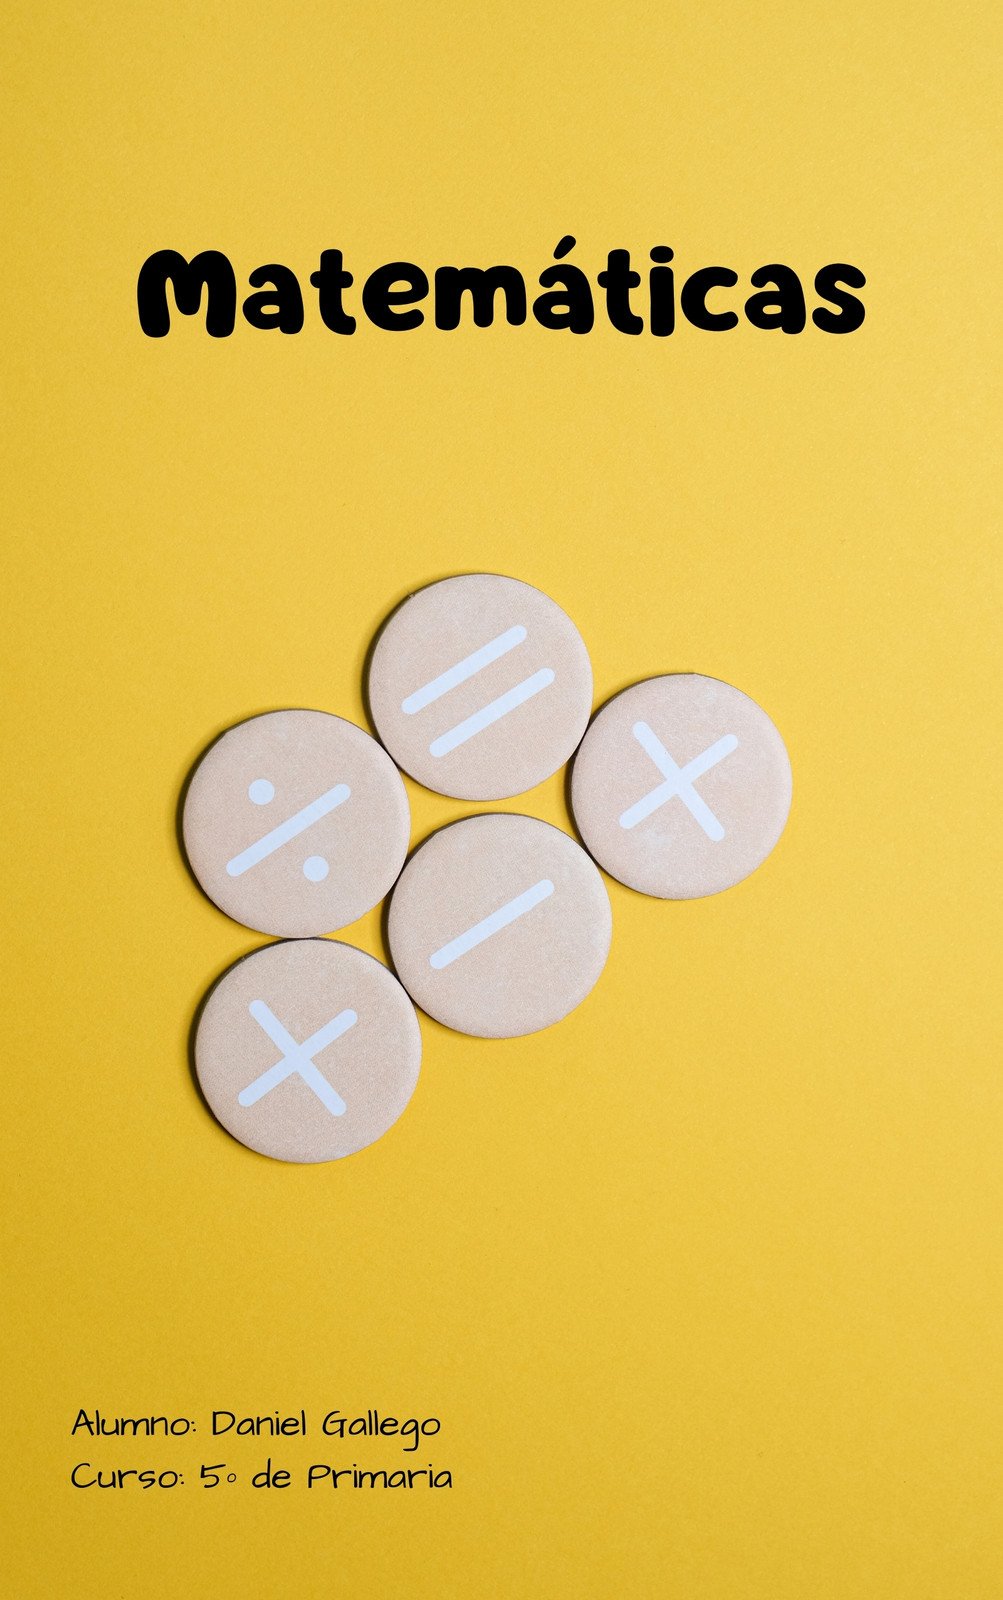 Plantillas de plantillas matematicas gratis y personalizables - Canva